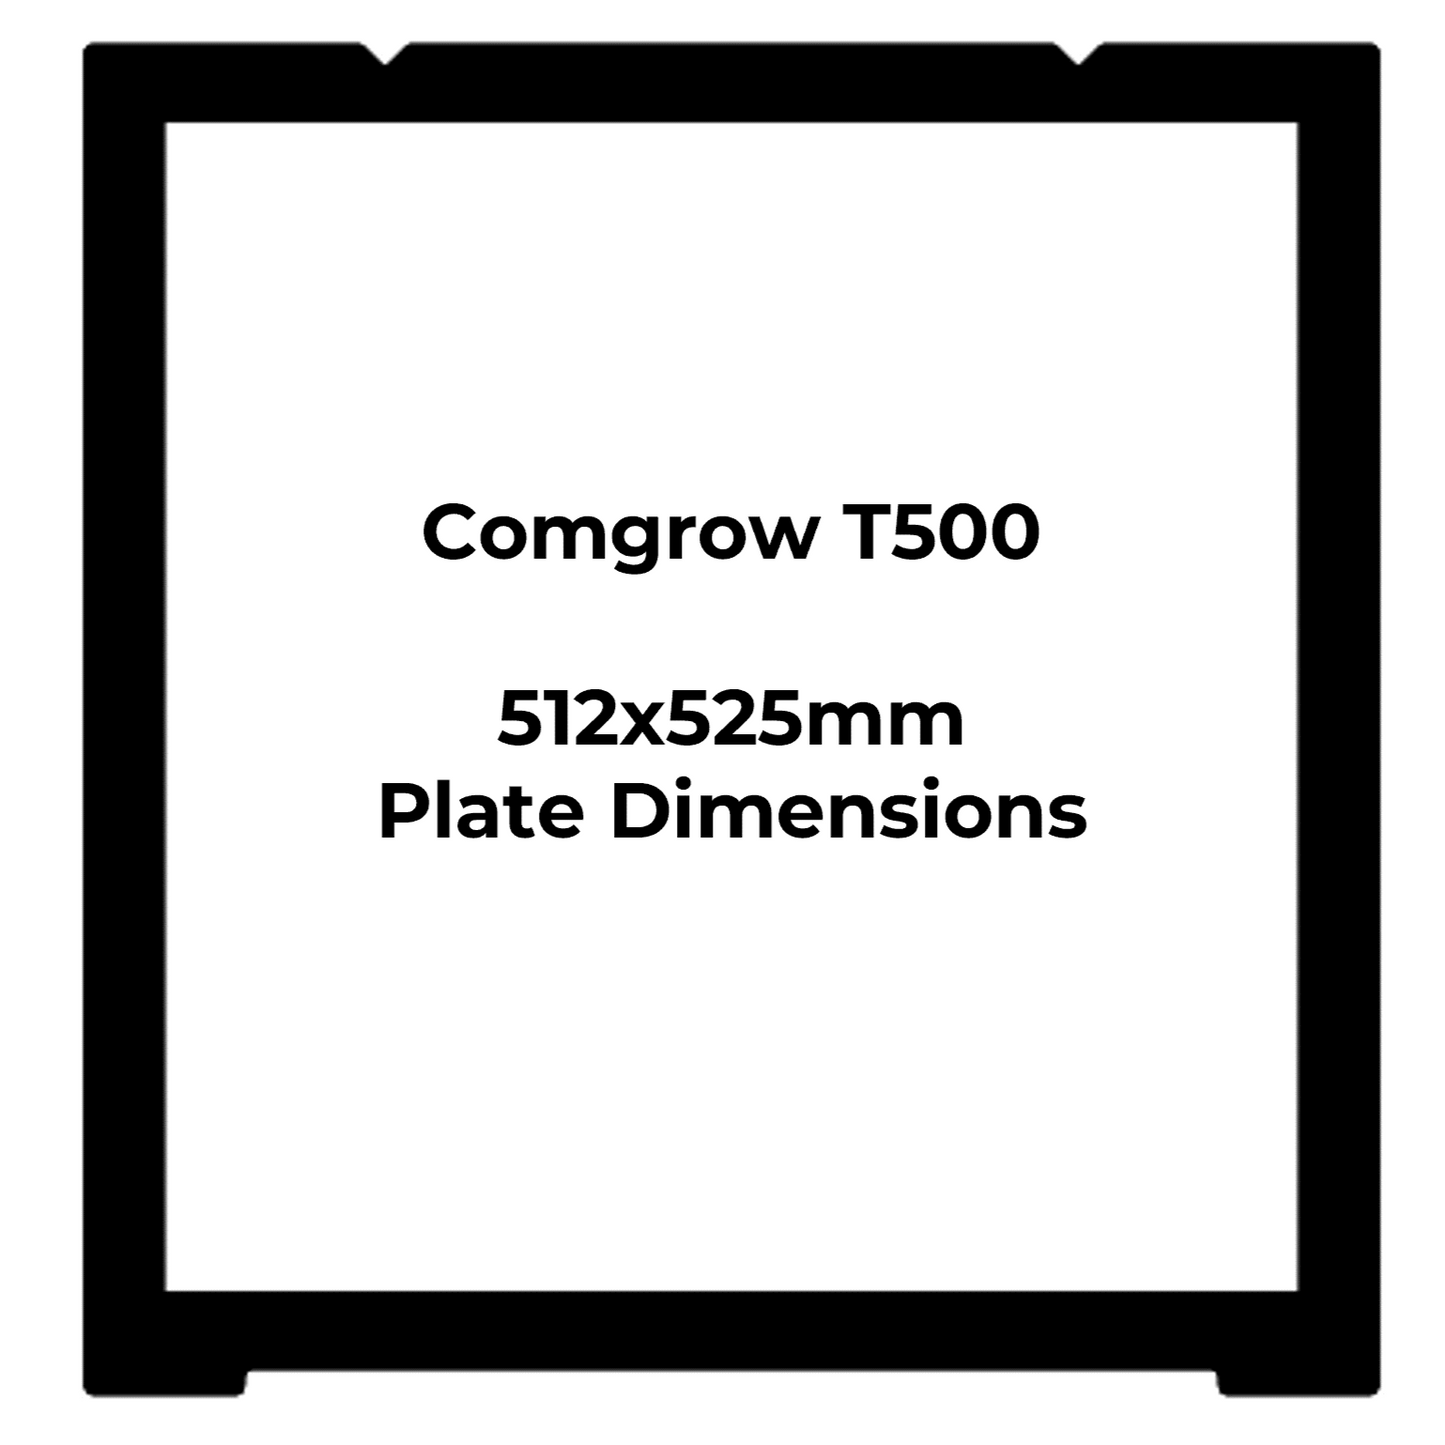 Custom Textured PEI Plate